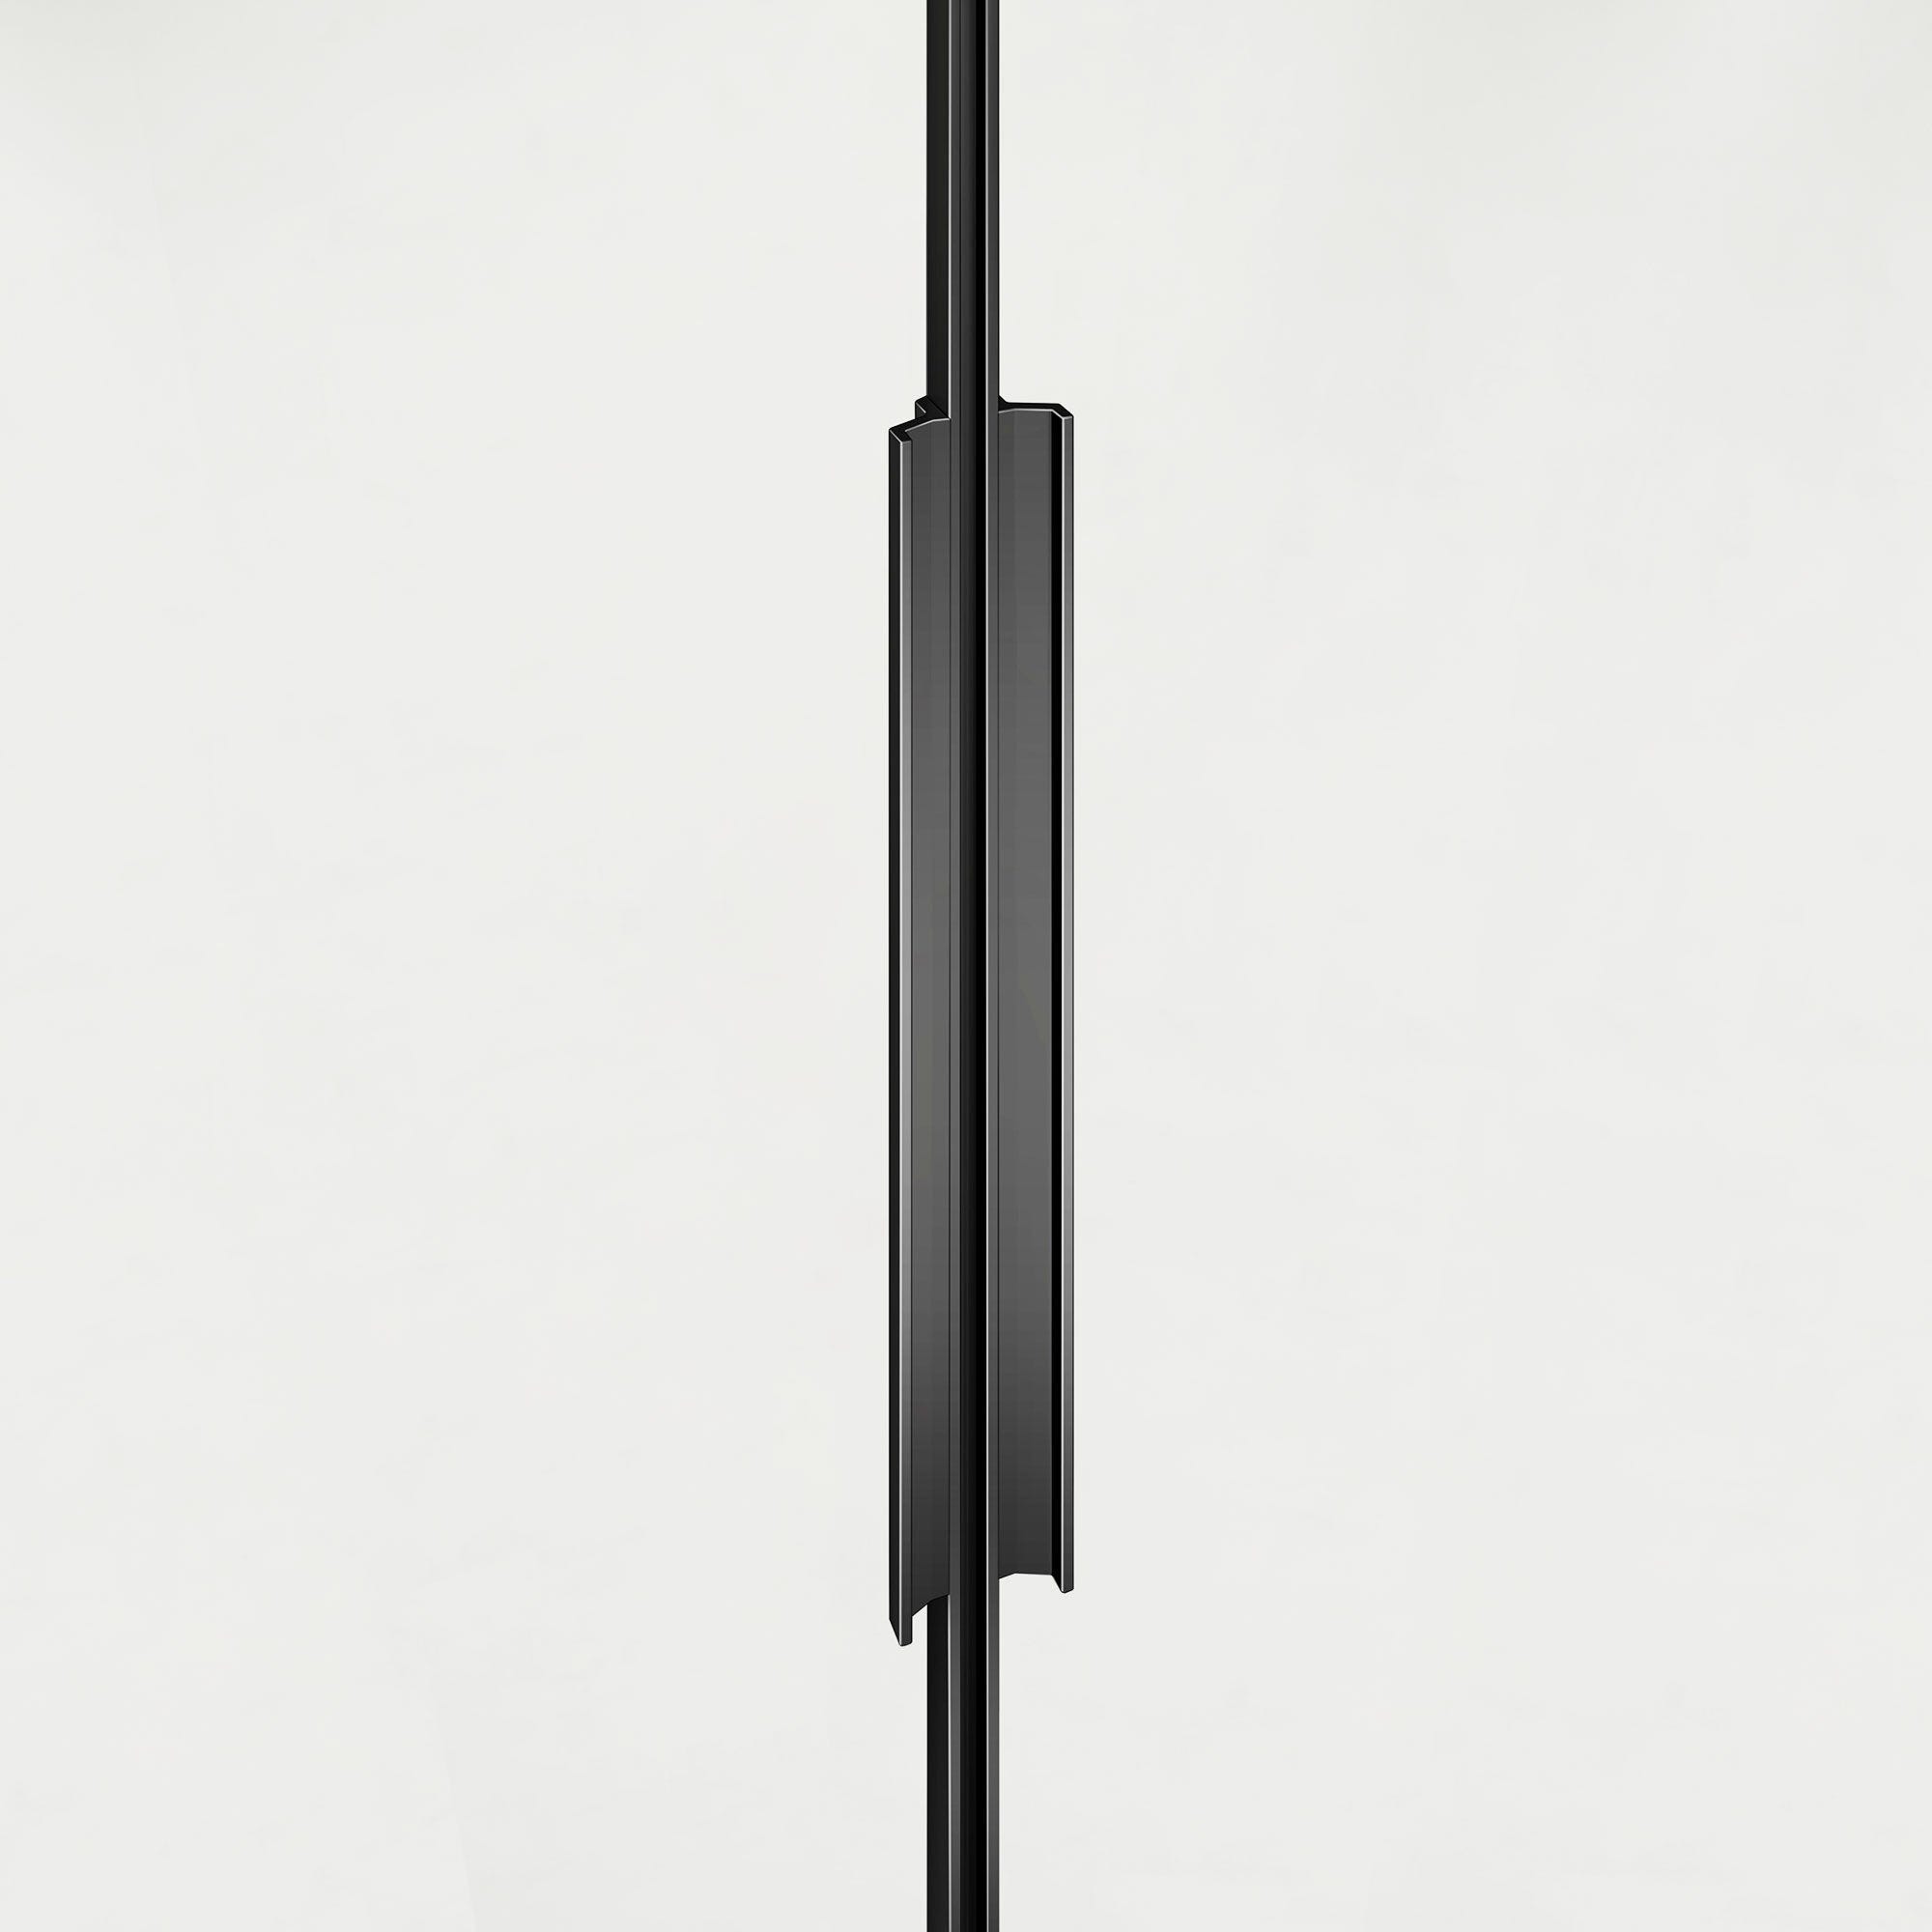 GRAND VERRE Cabine de douche à ouverture intérieure et extérieure 100x100 en verre 6mm transparent profilés en aluminium noir mat 3